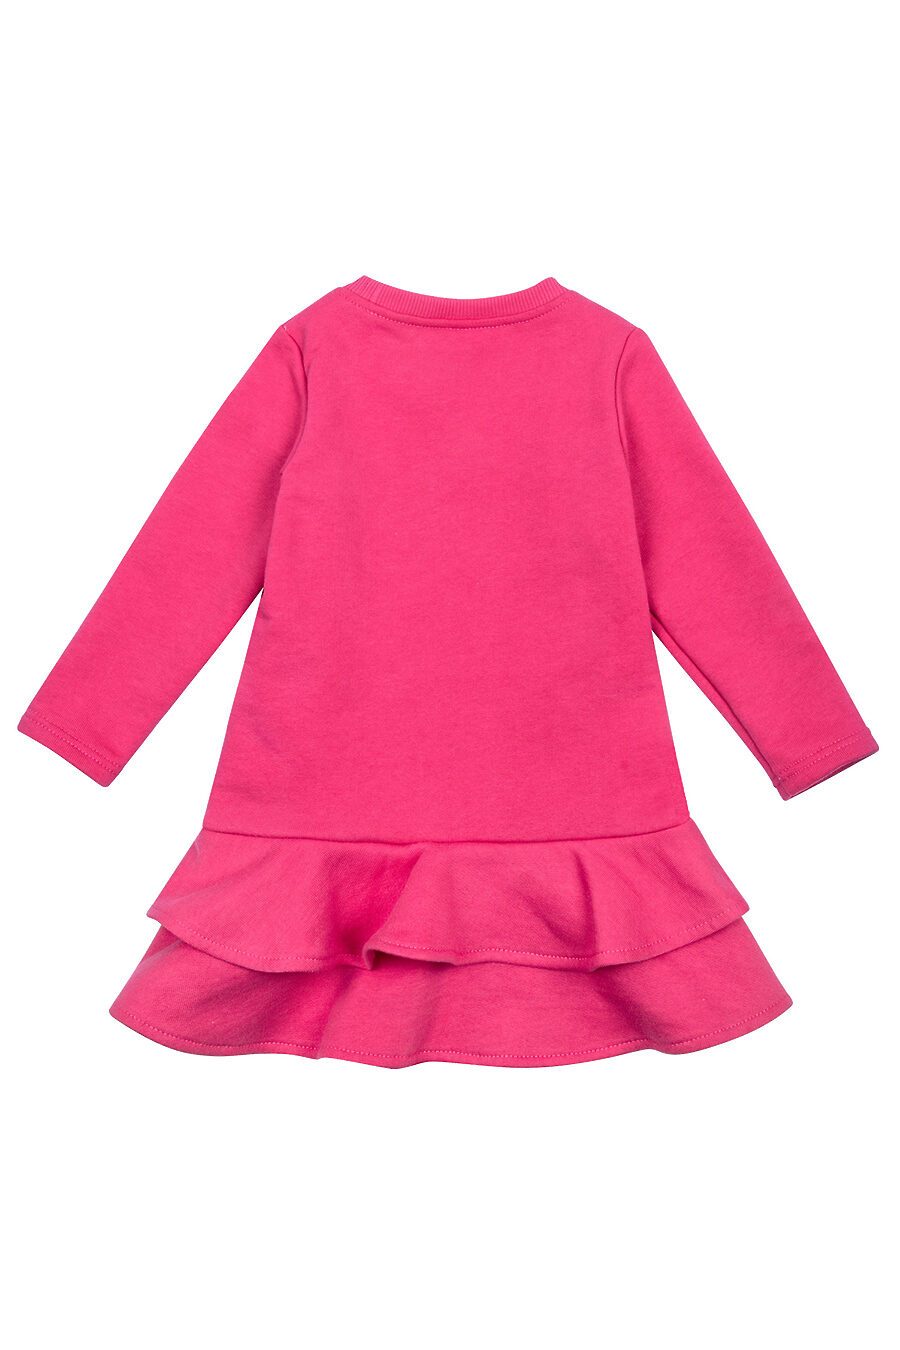 Платье для девочек BOSSA NOVA 683680 купить оптом от производителя. Совместная покупка детской одежды в OptMoyo